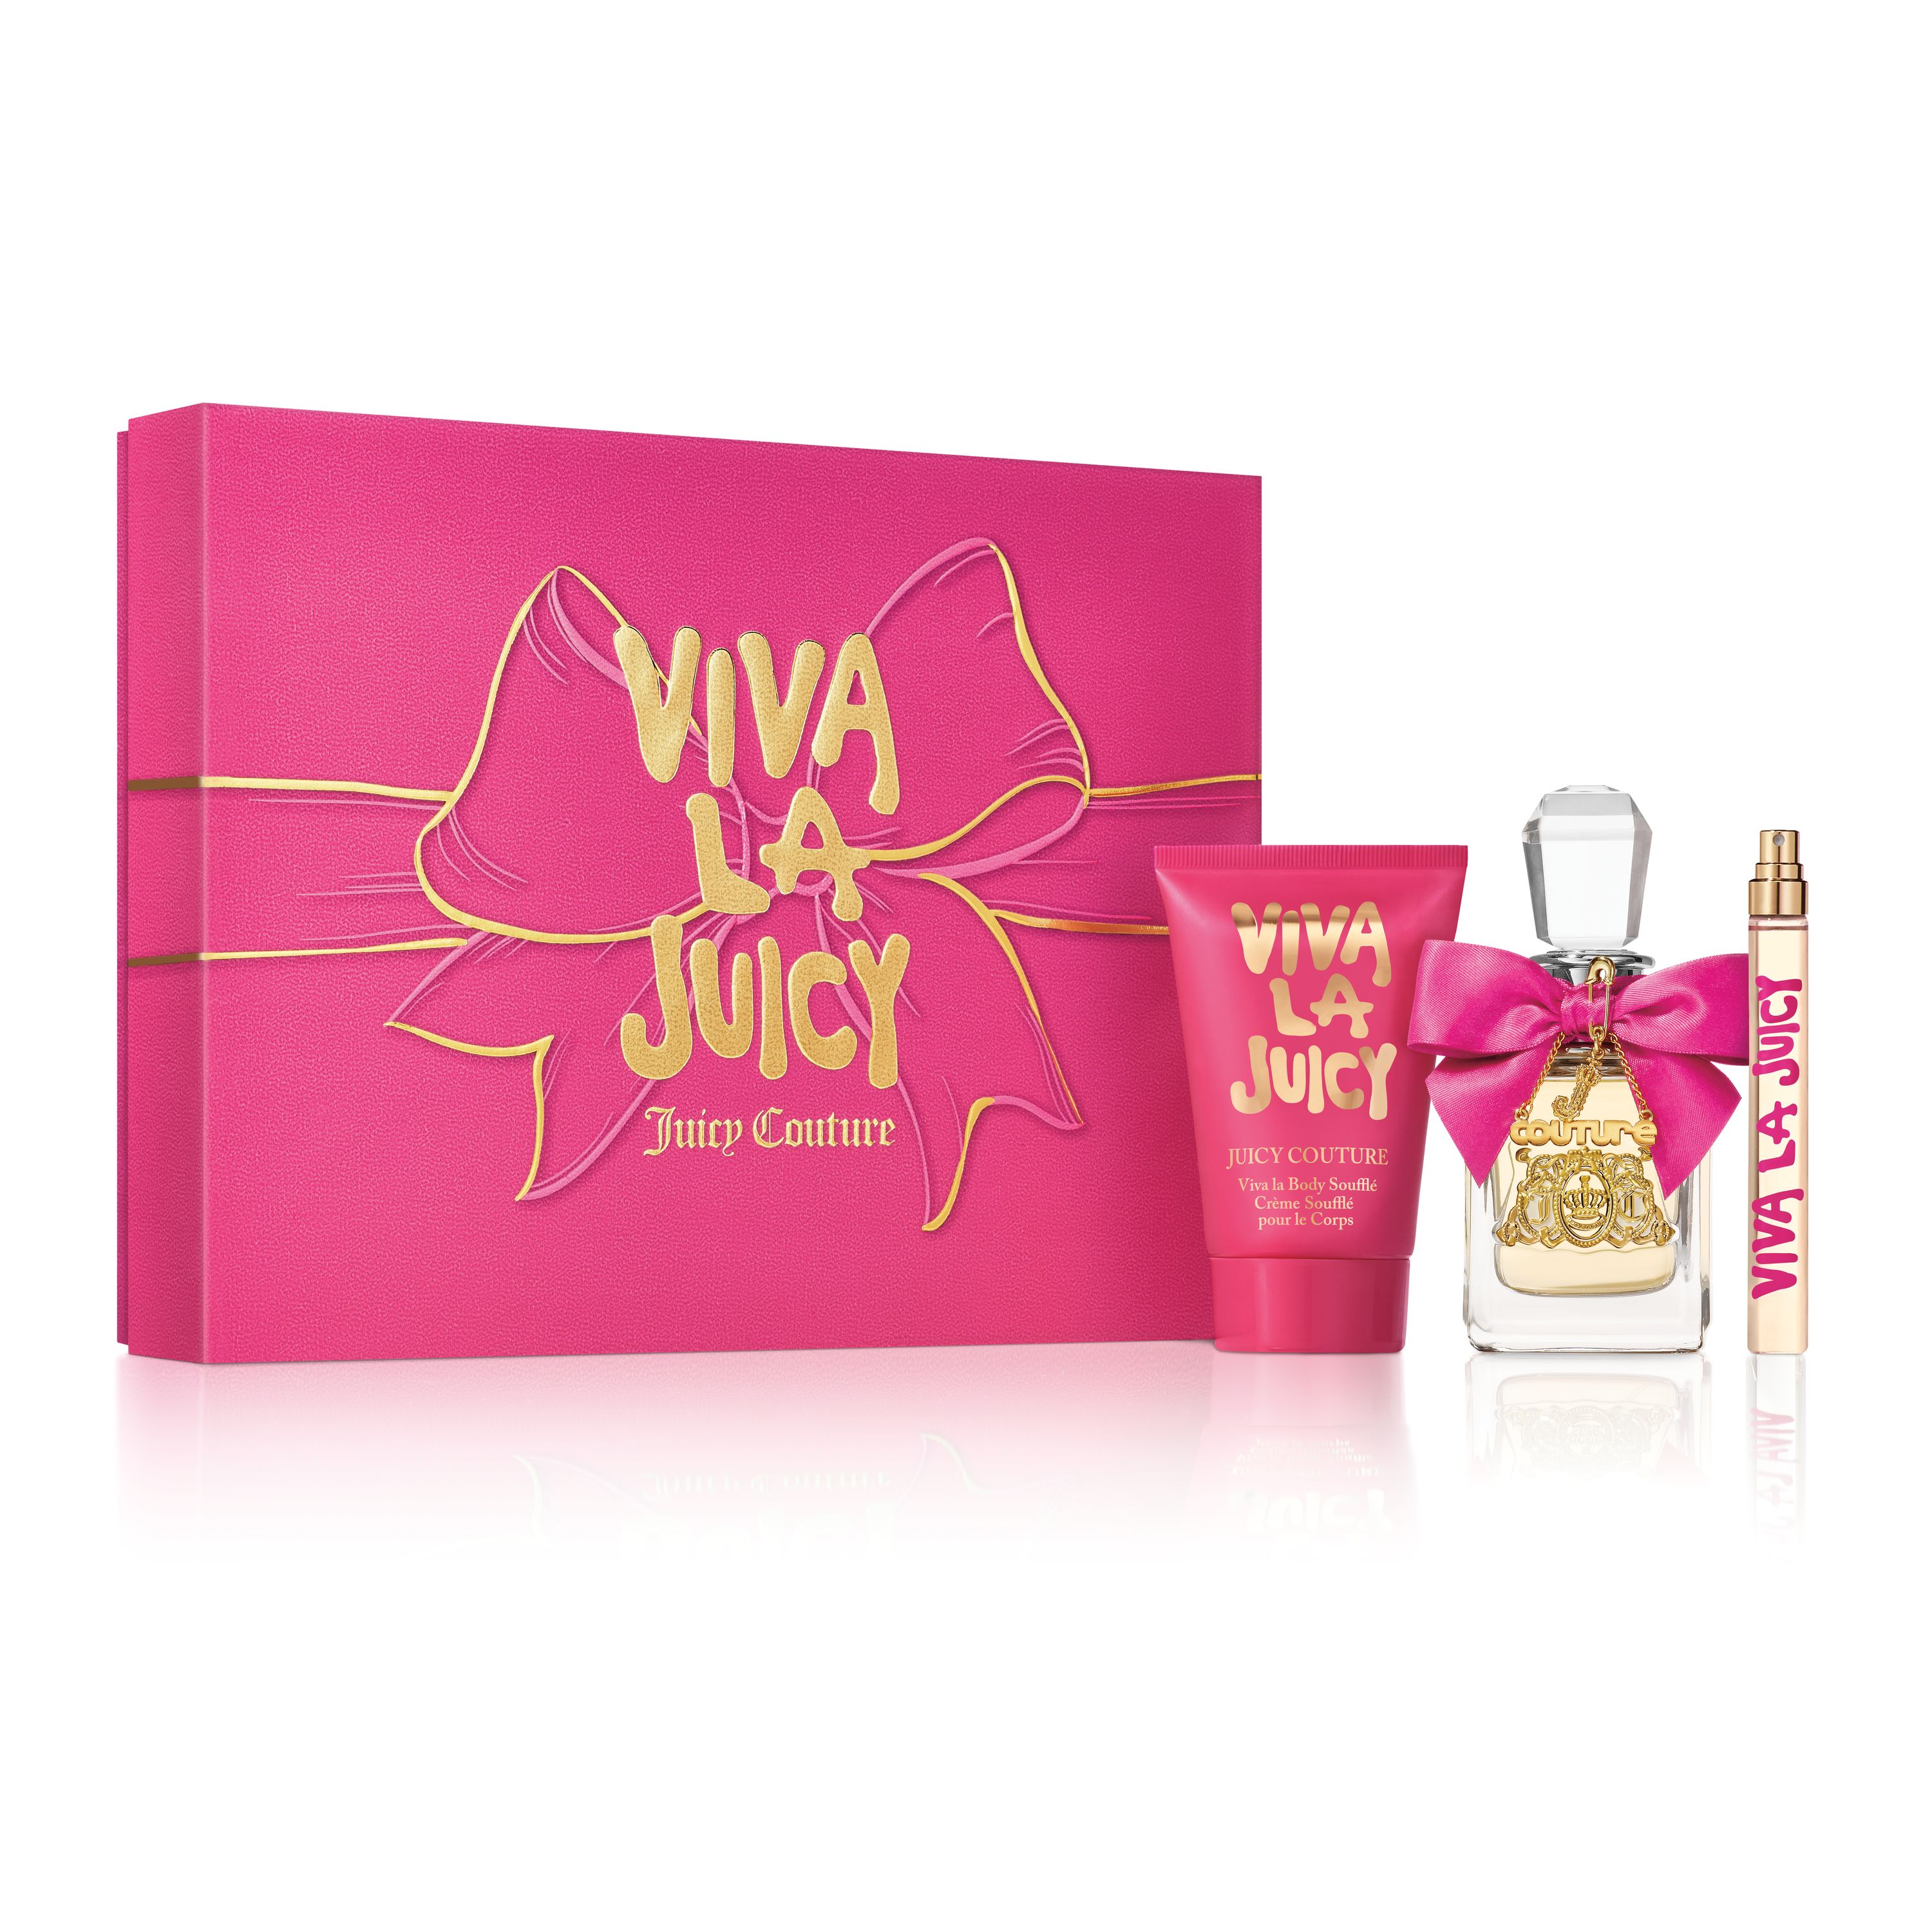 美國 Juicy Couture  Viva la Juicy 香氛禮盒 (50ml淡香精+125ml身體乳霜+10ml隨行香氛)